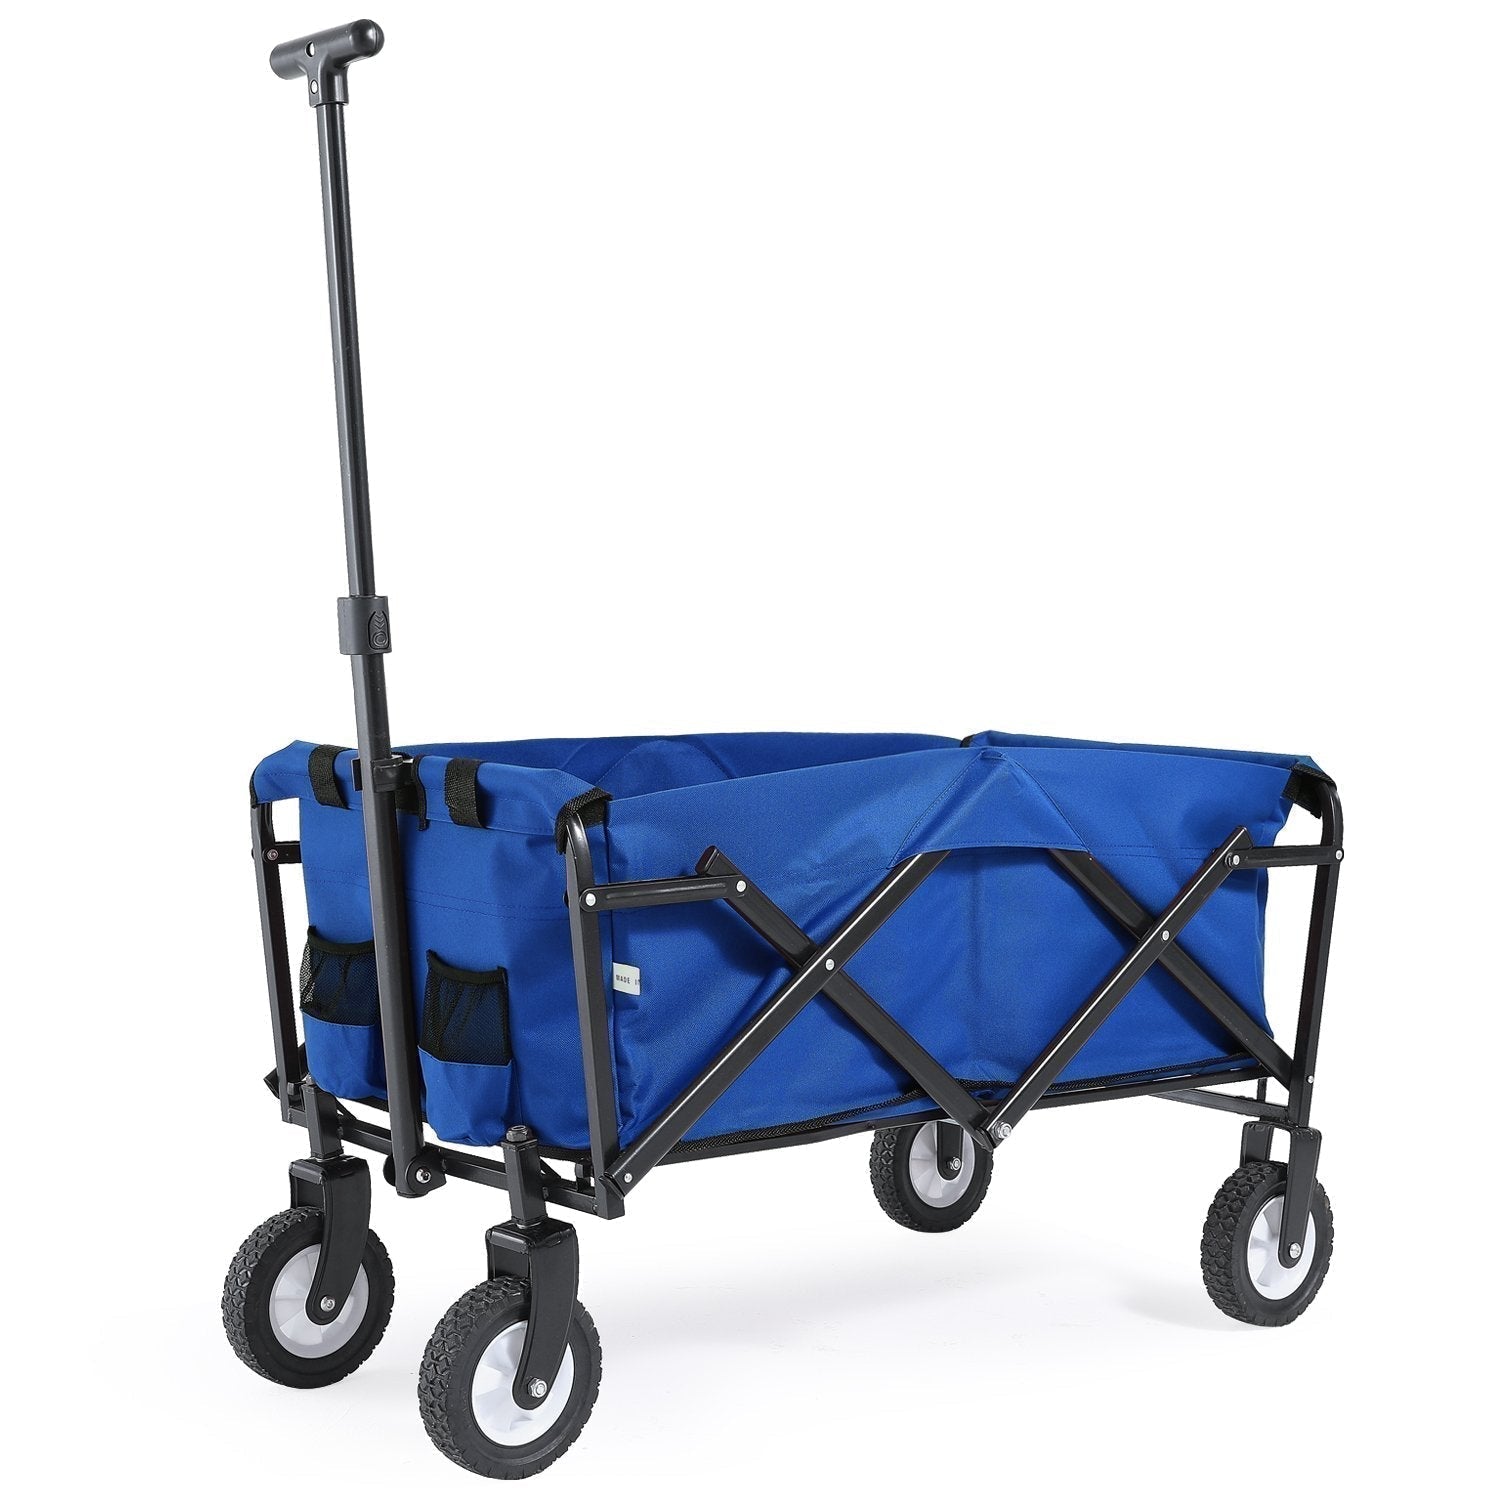 Folding Collapsible Utility Wagon Cart Outdoor Garden Shopping Camping